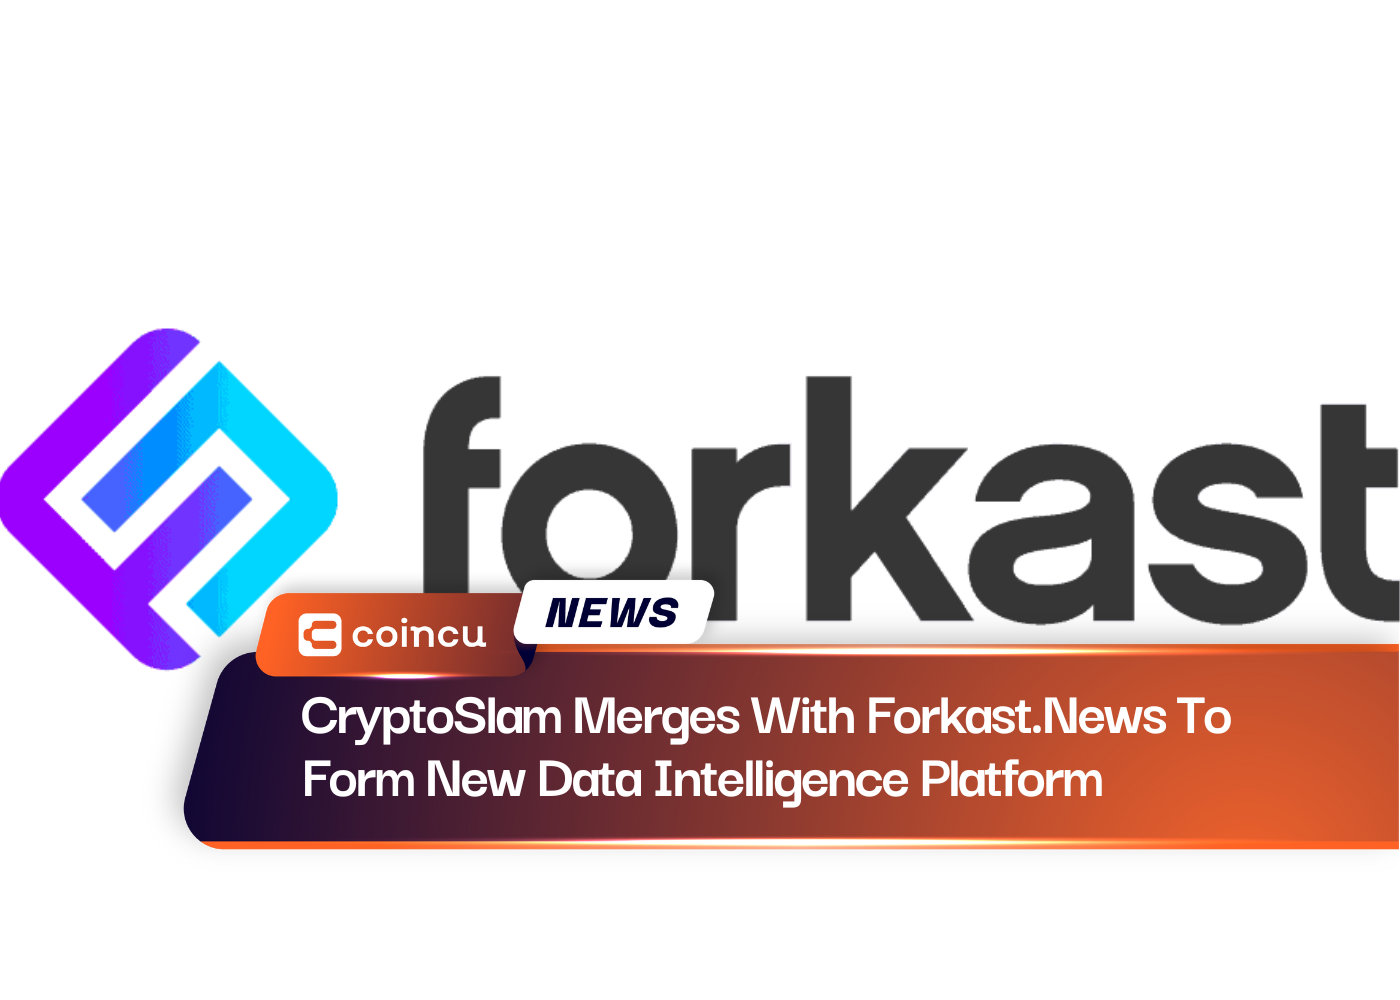 CryptoSlam은 Forkast.News와 합병하여 새로운 데이터 인텔리전스 플랫폼을 형성합니다.